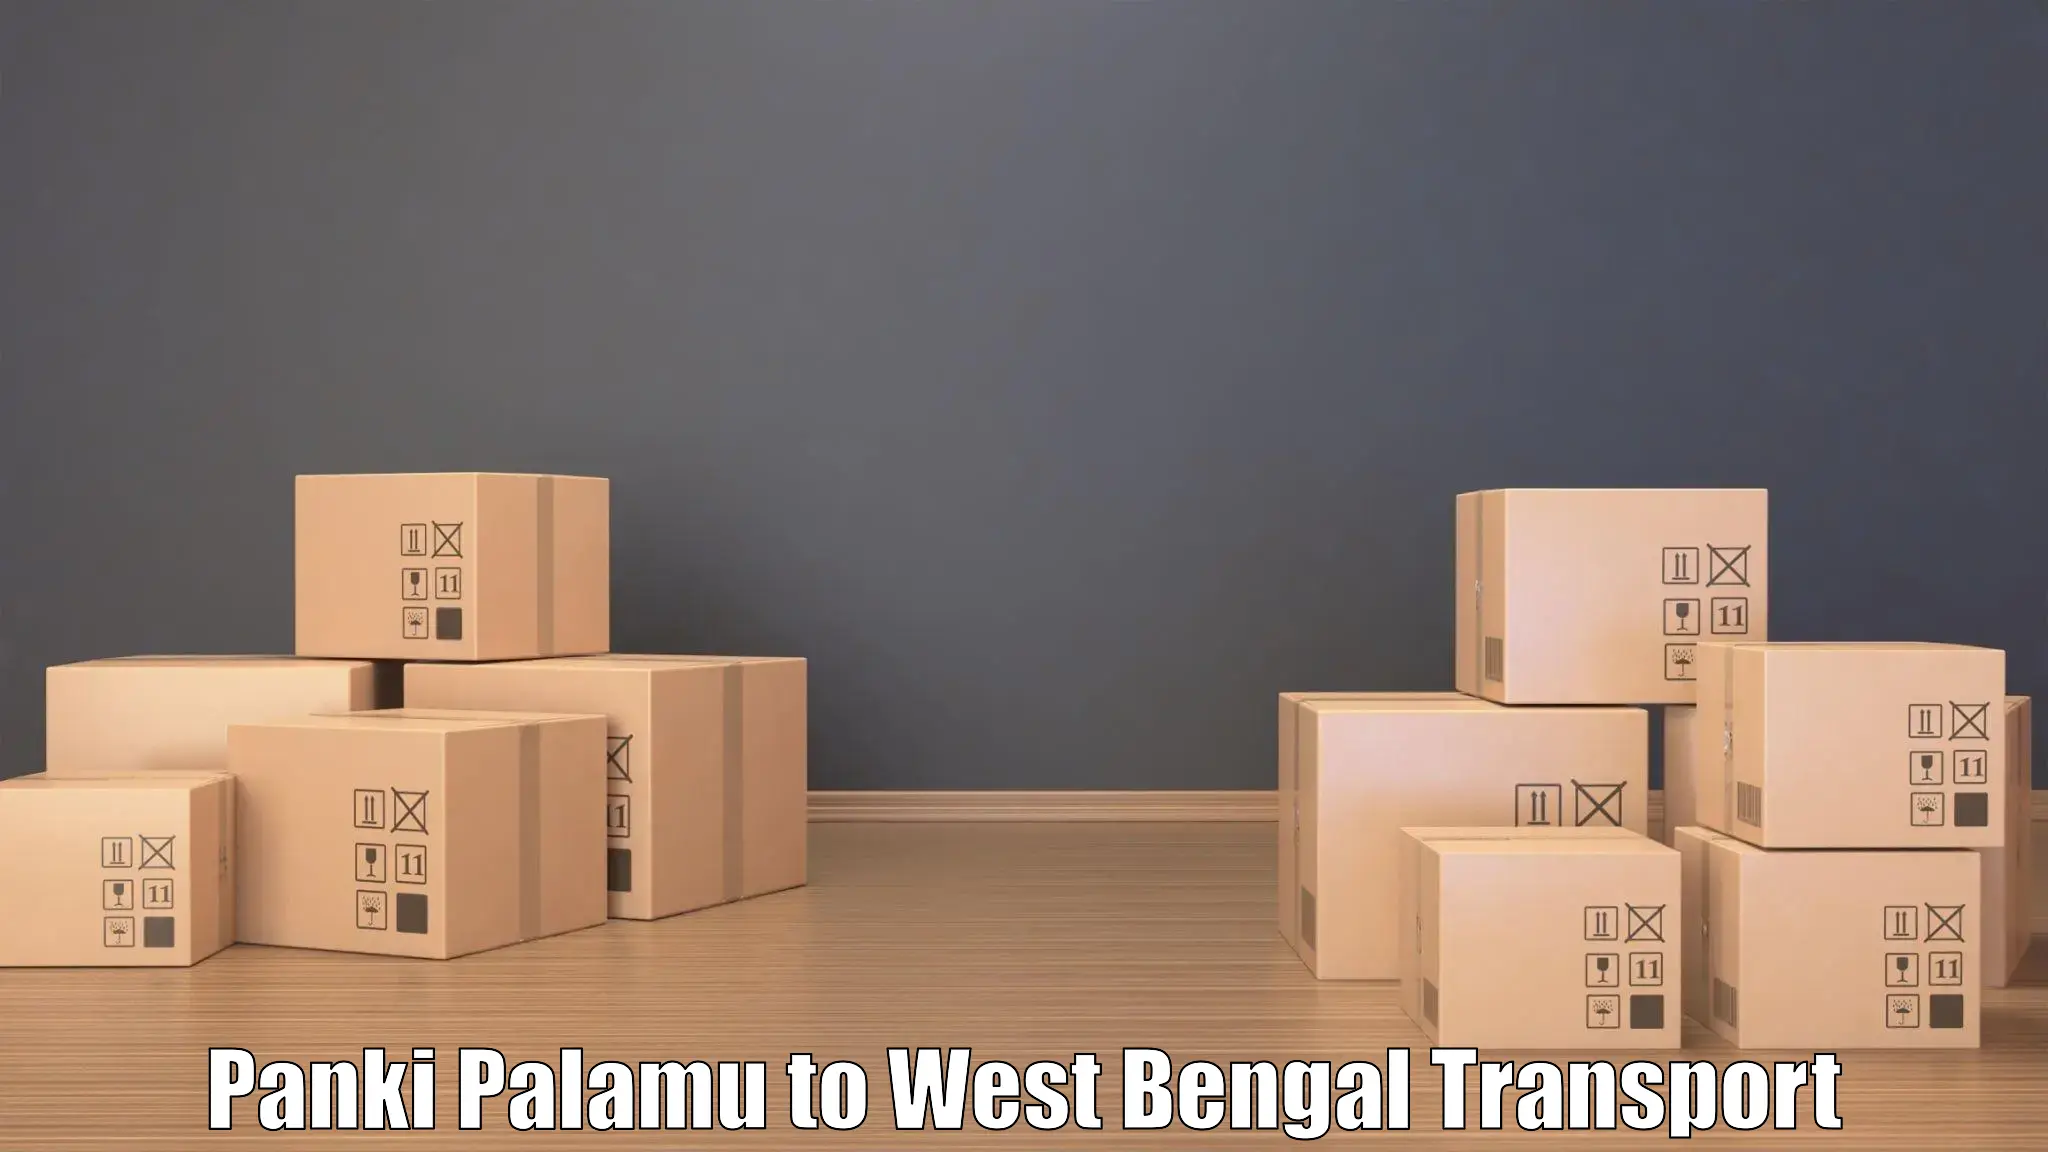 Cycle transportation service Panki Palamu to West Bengal